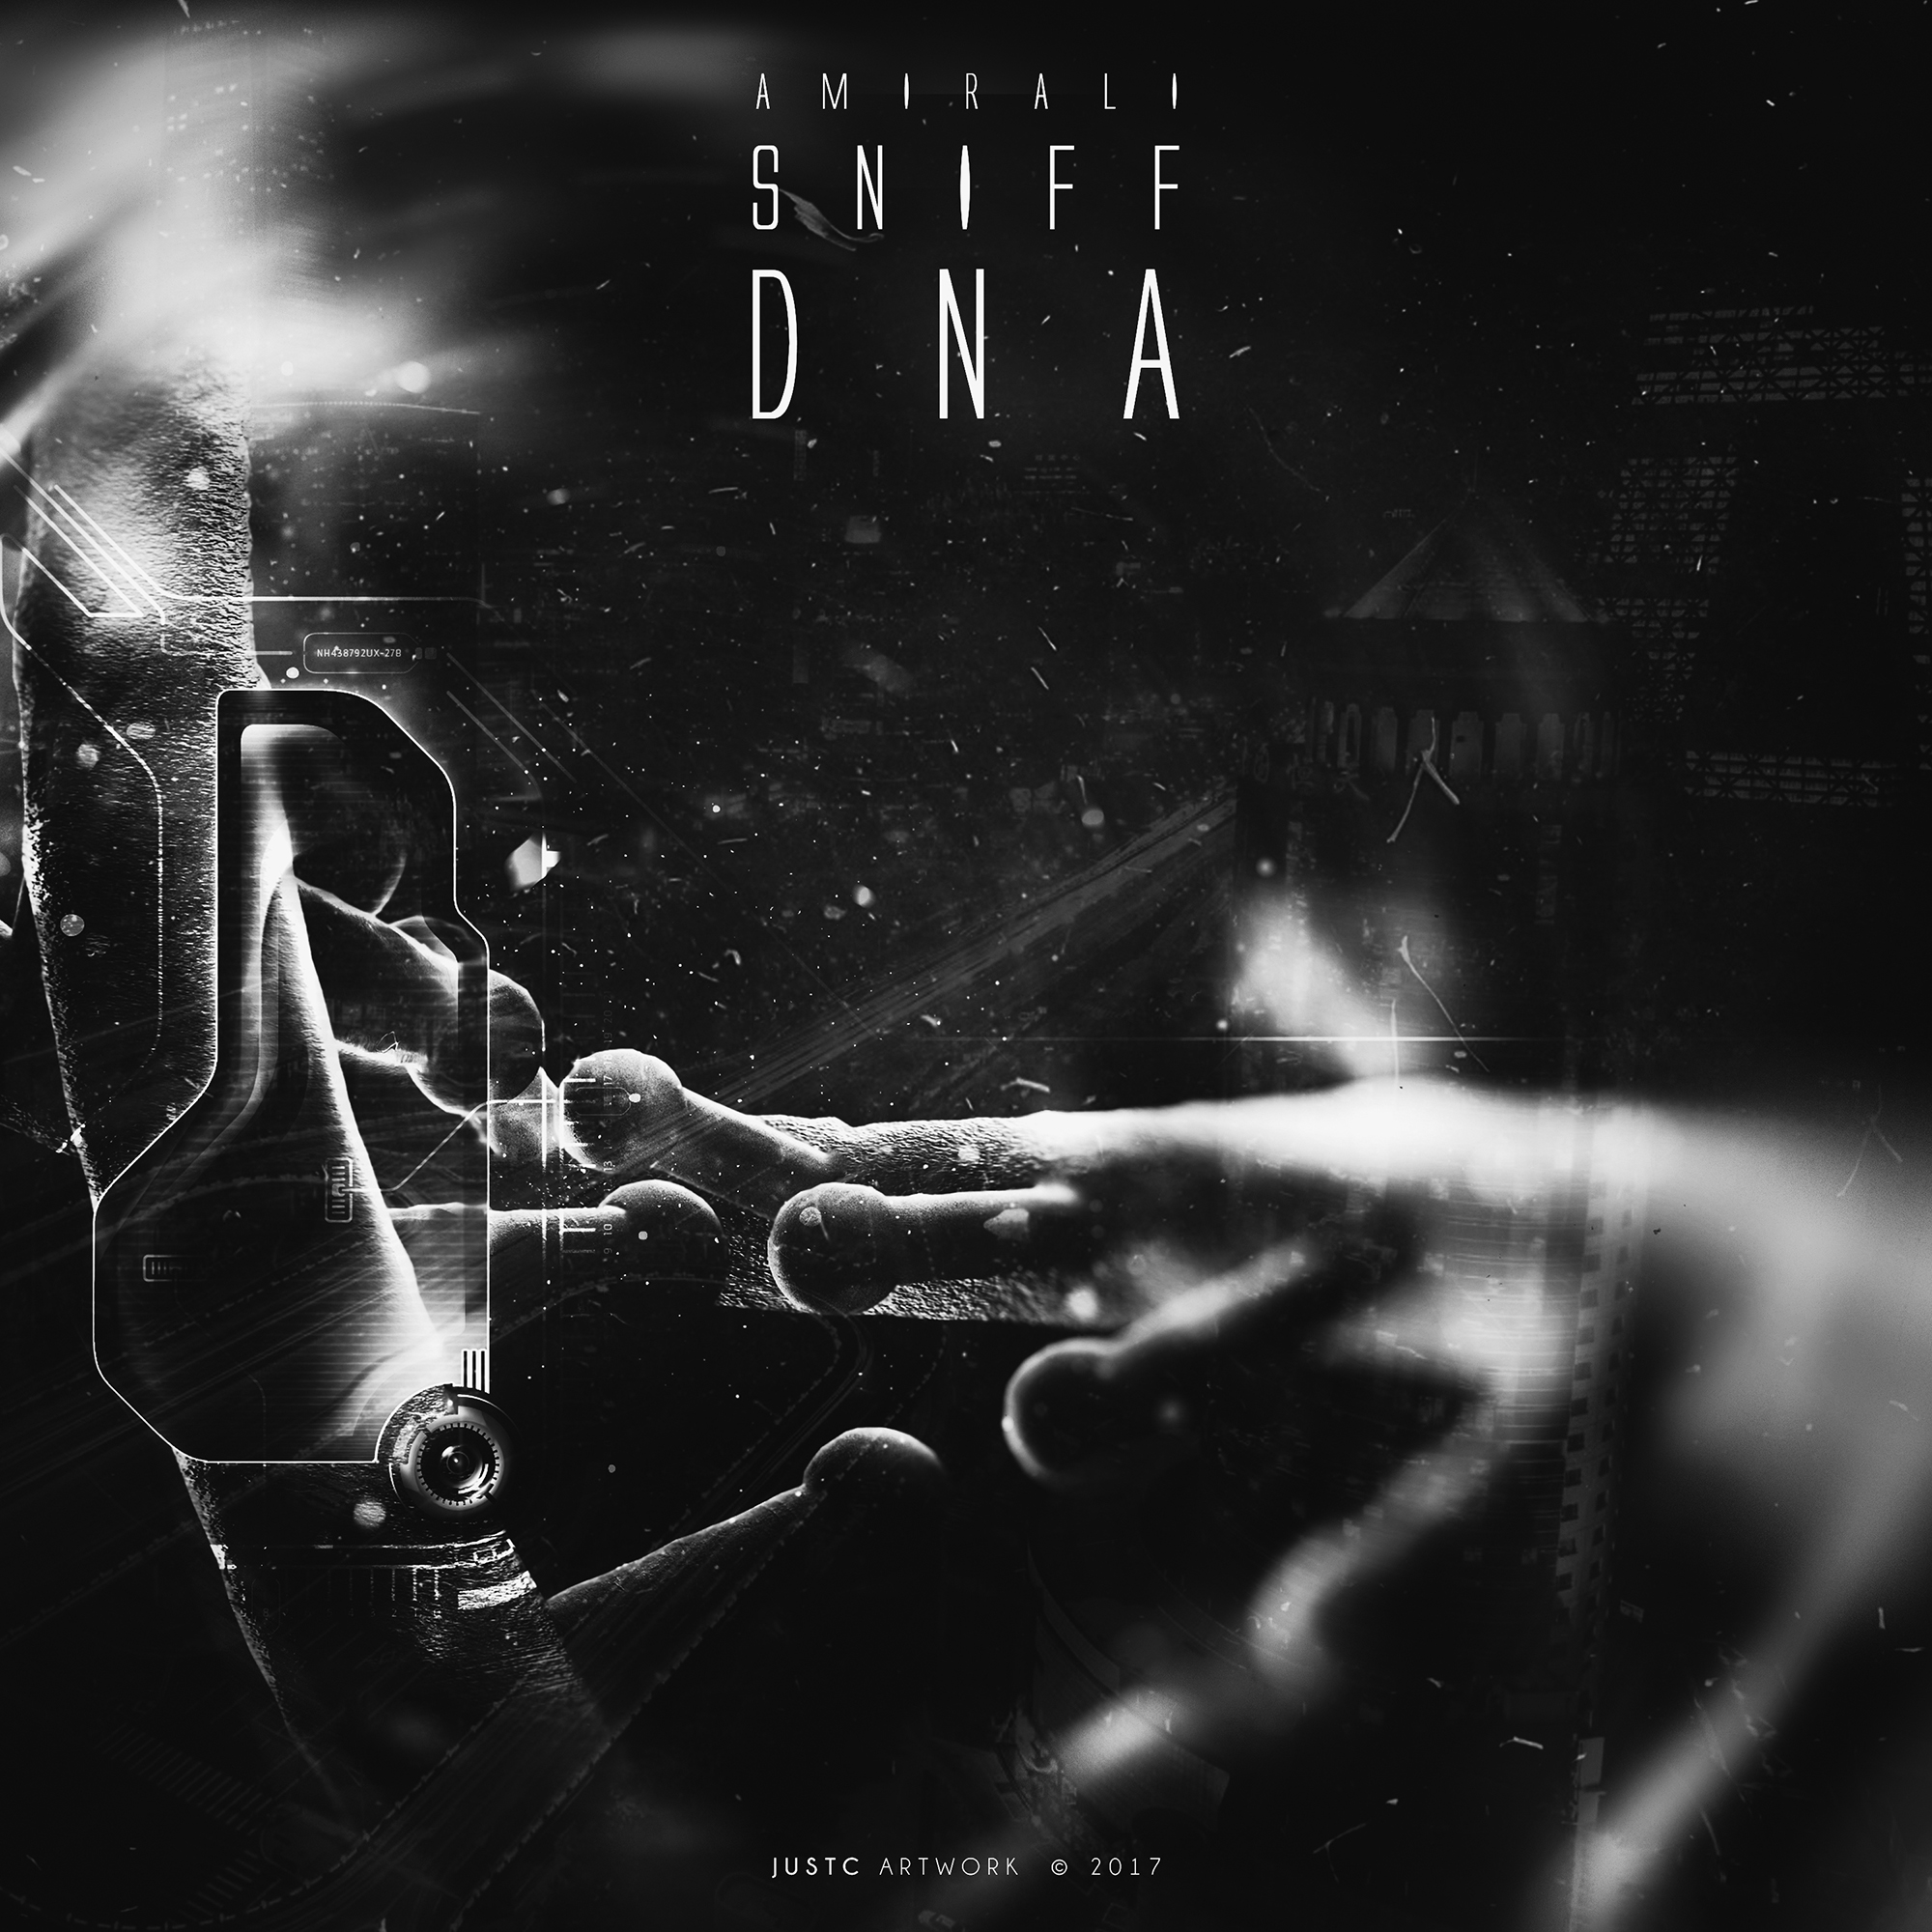 دانلود آلبوم جدید و بسیار زیبای امیرعلی اسنیف به نام DNA